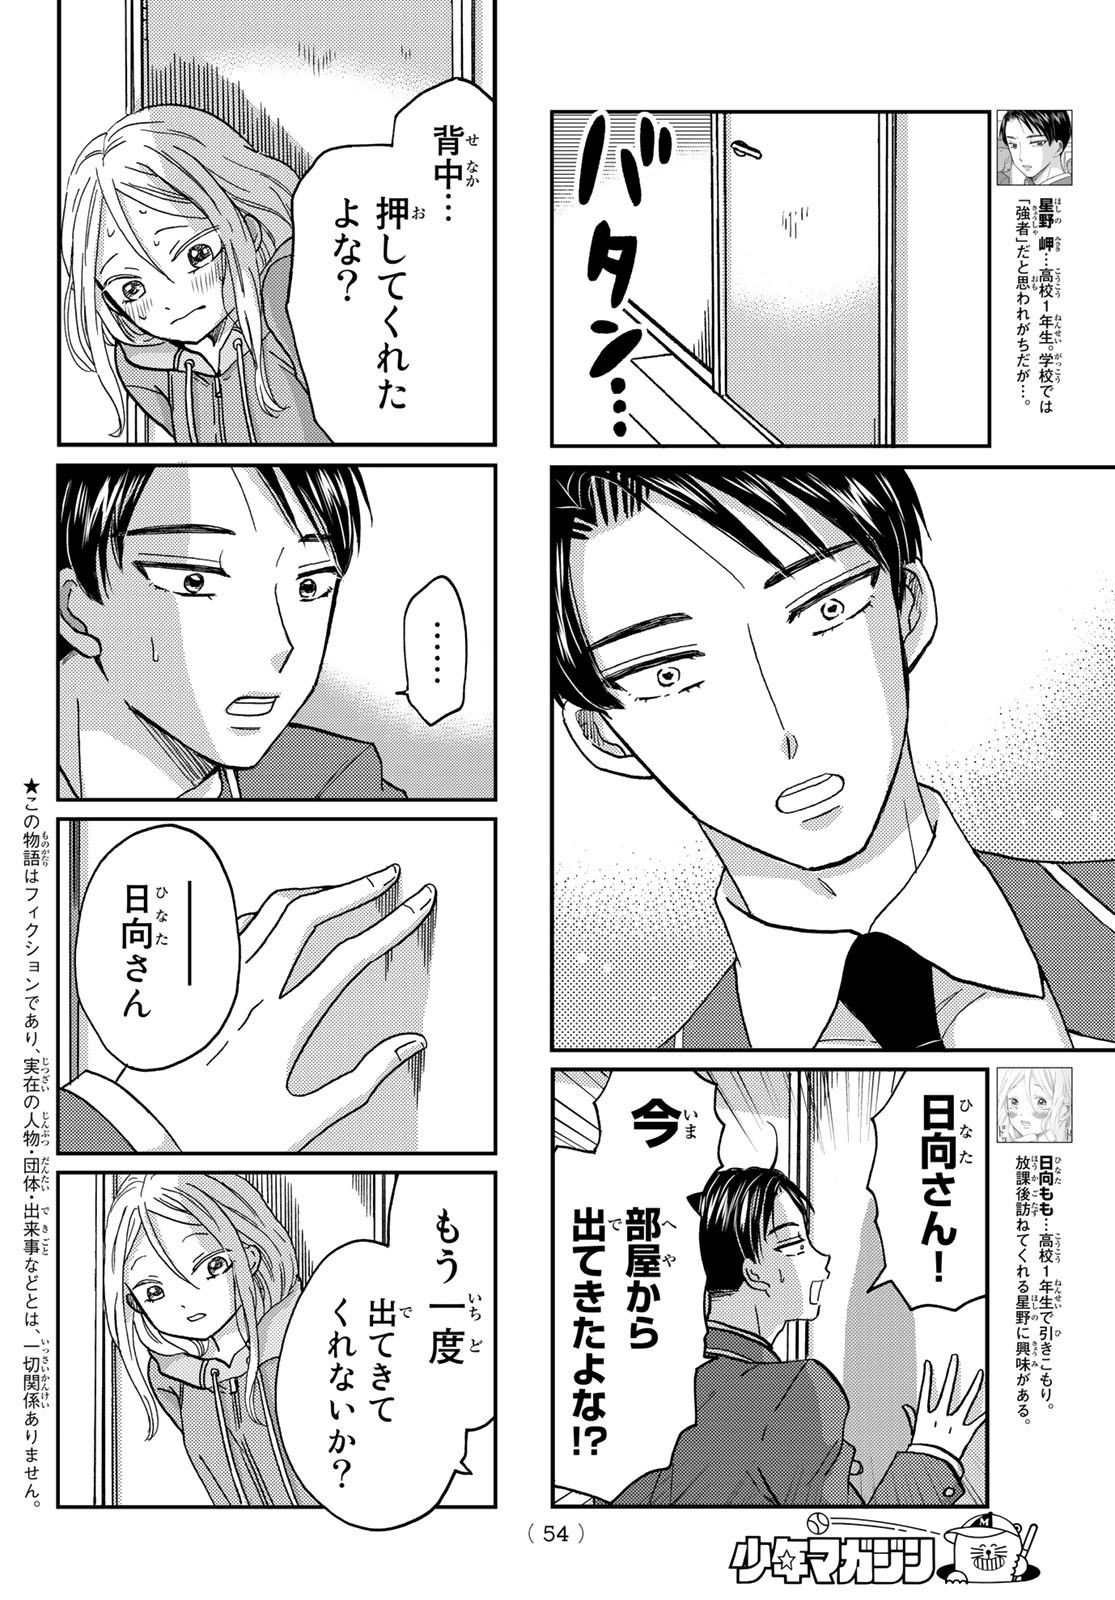 Hinata-san, Hoshino desu. - Chapter 010 - Page 2